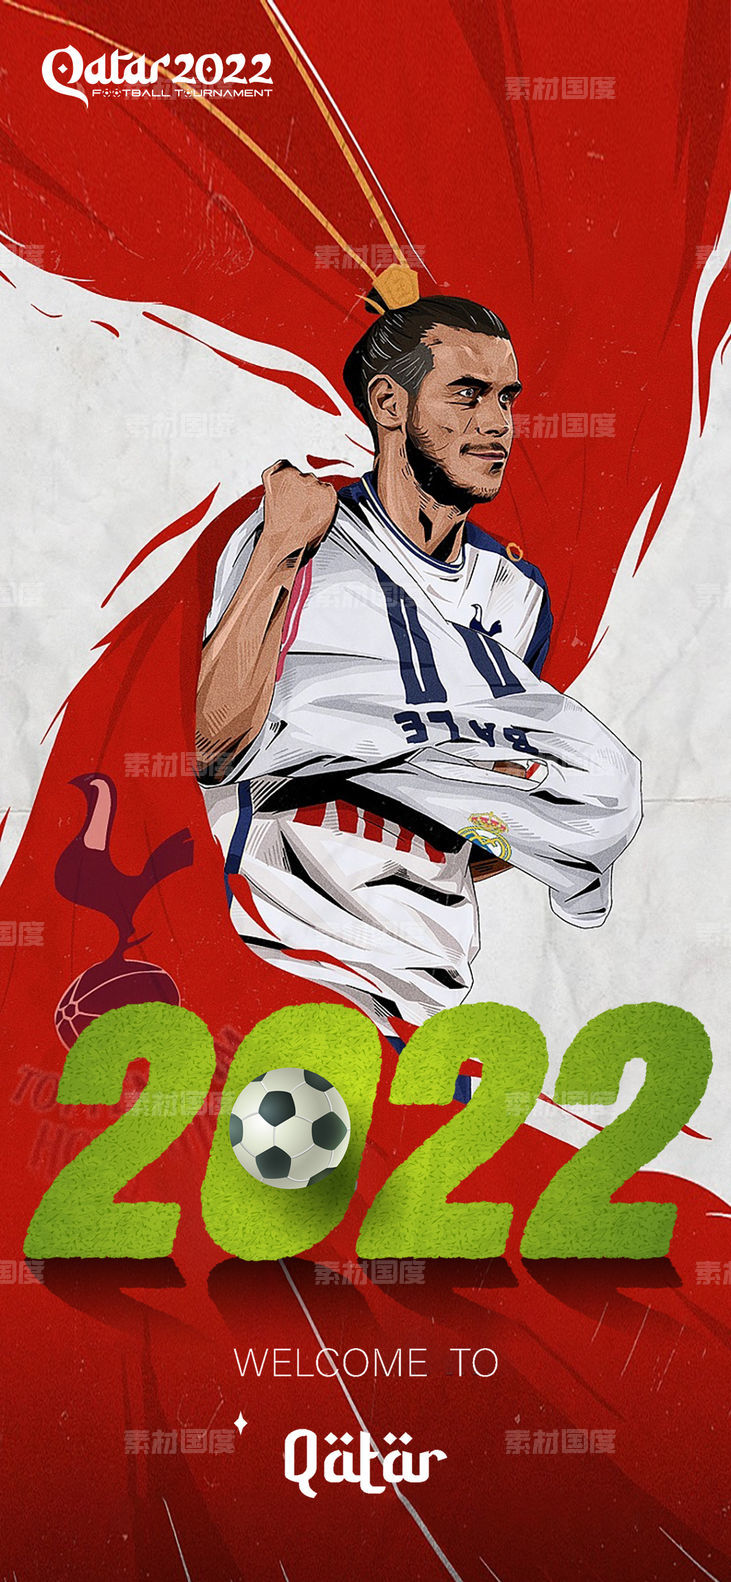 2022世界杯海报 卡塔尔 足球 FAIFA 高端 大气